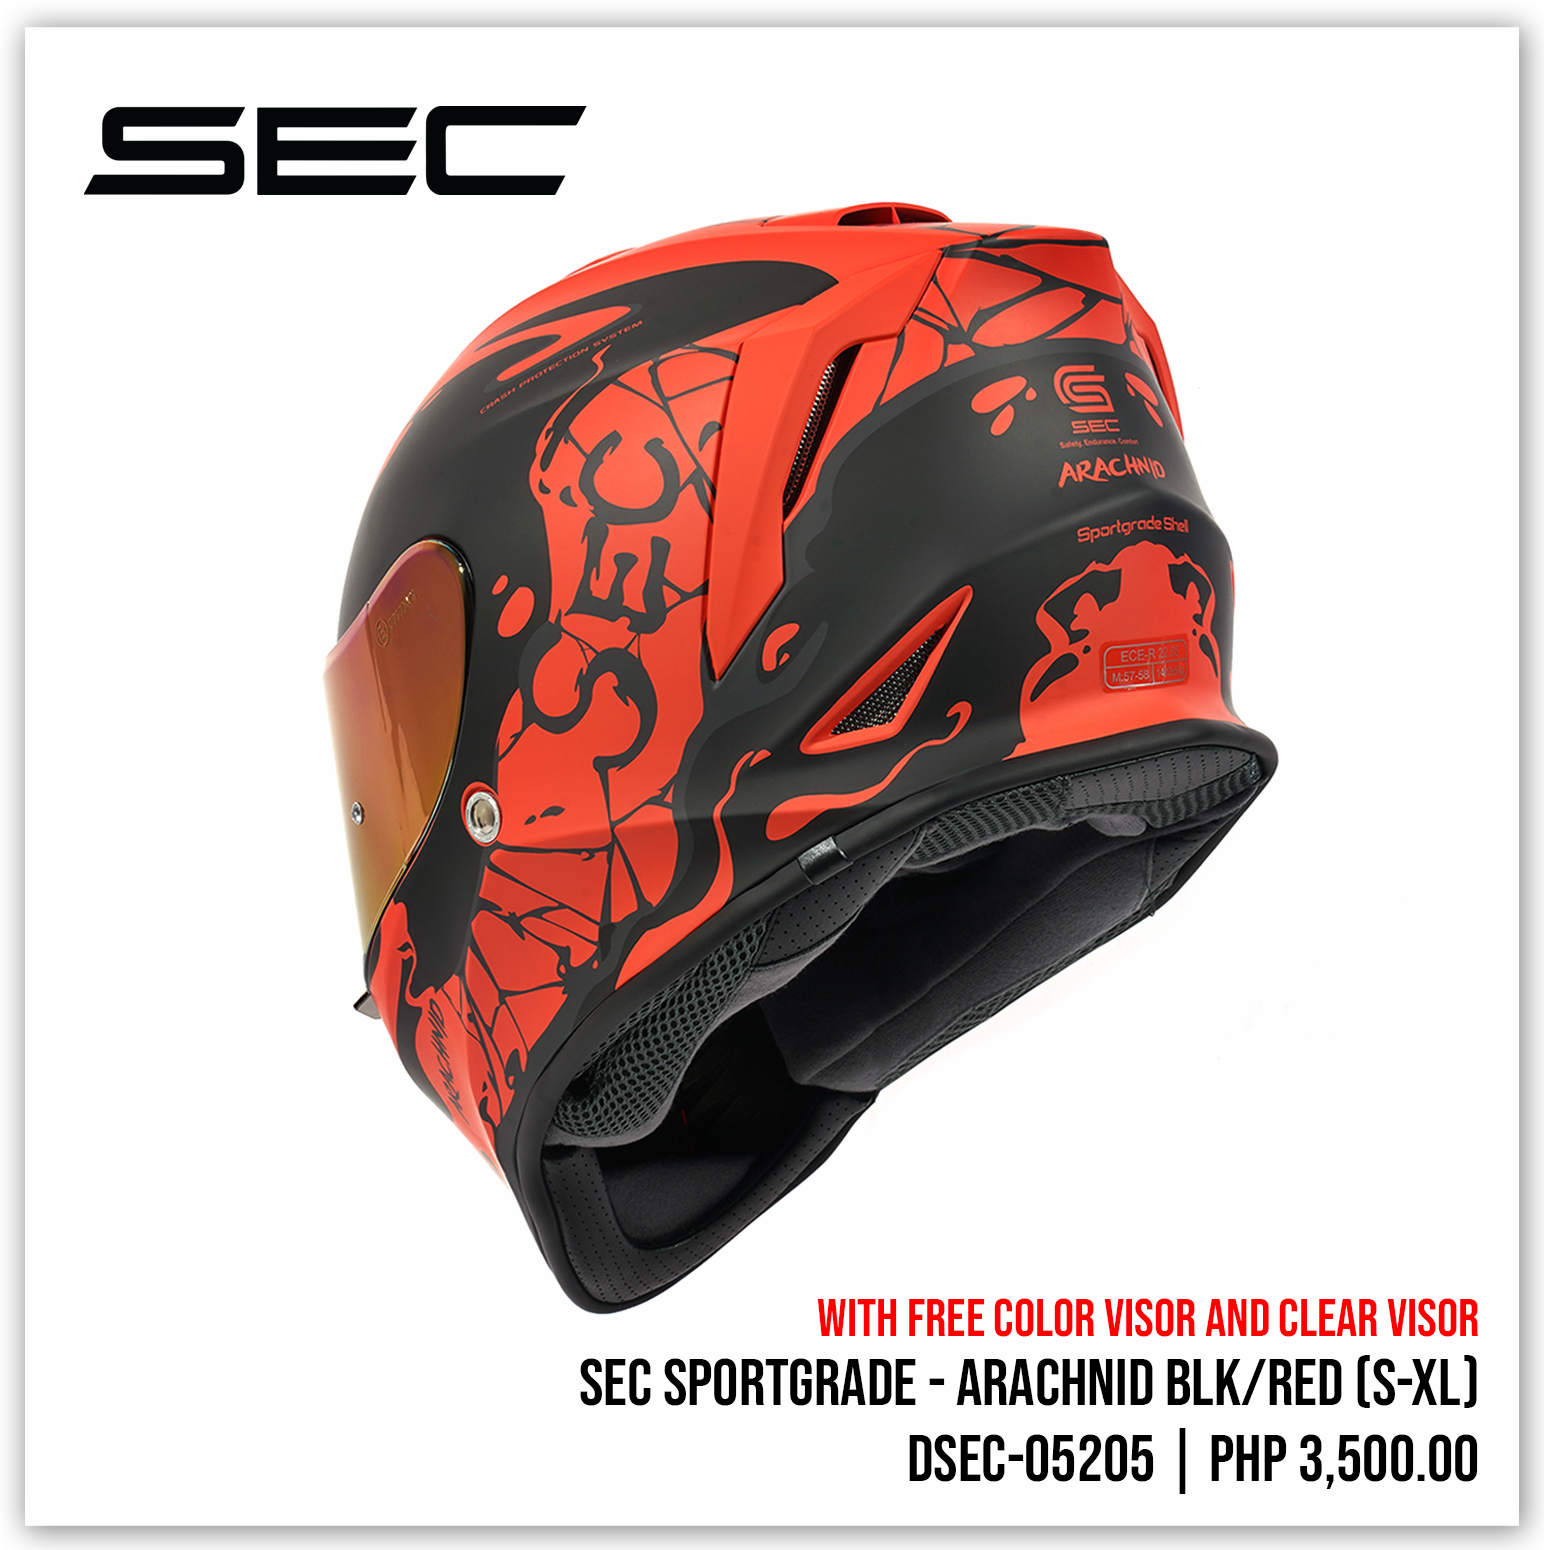 SEC Sportgrade - Arachnid BLK/RED